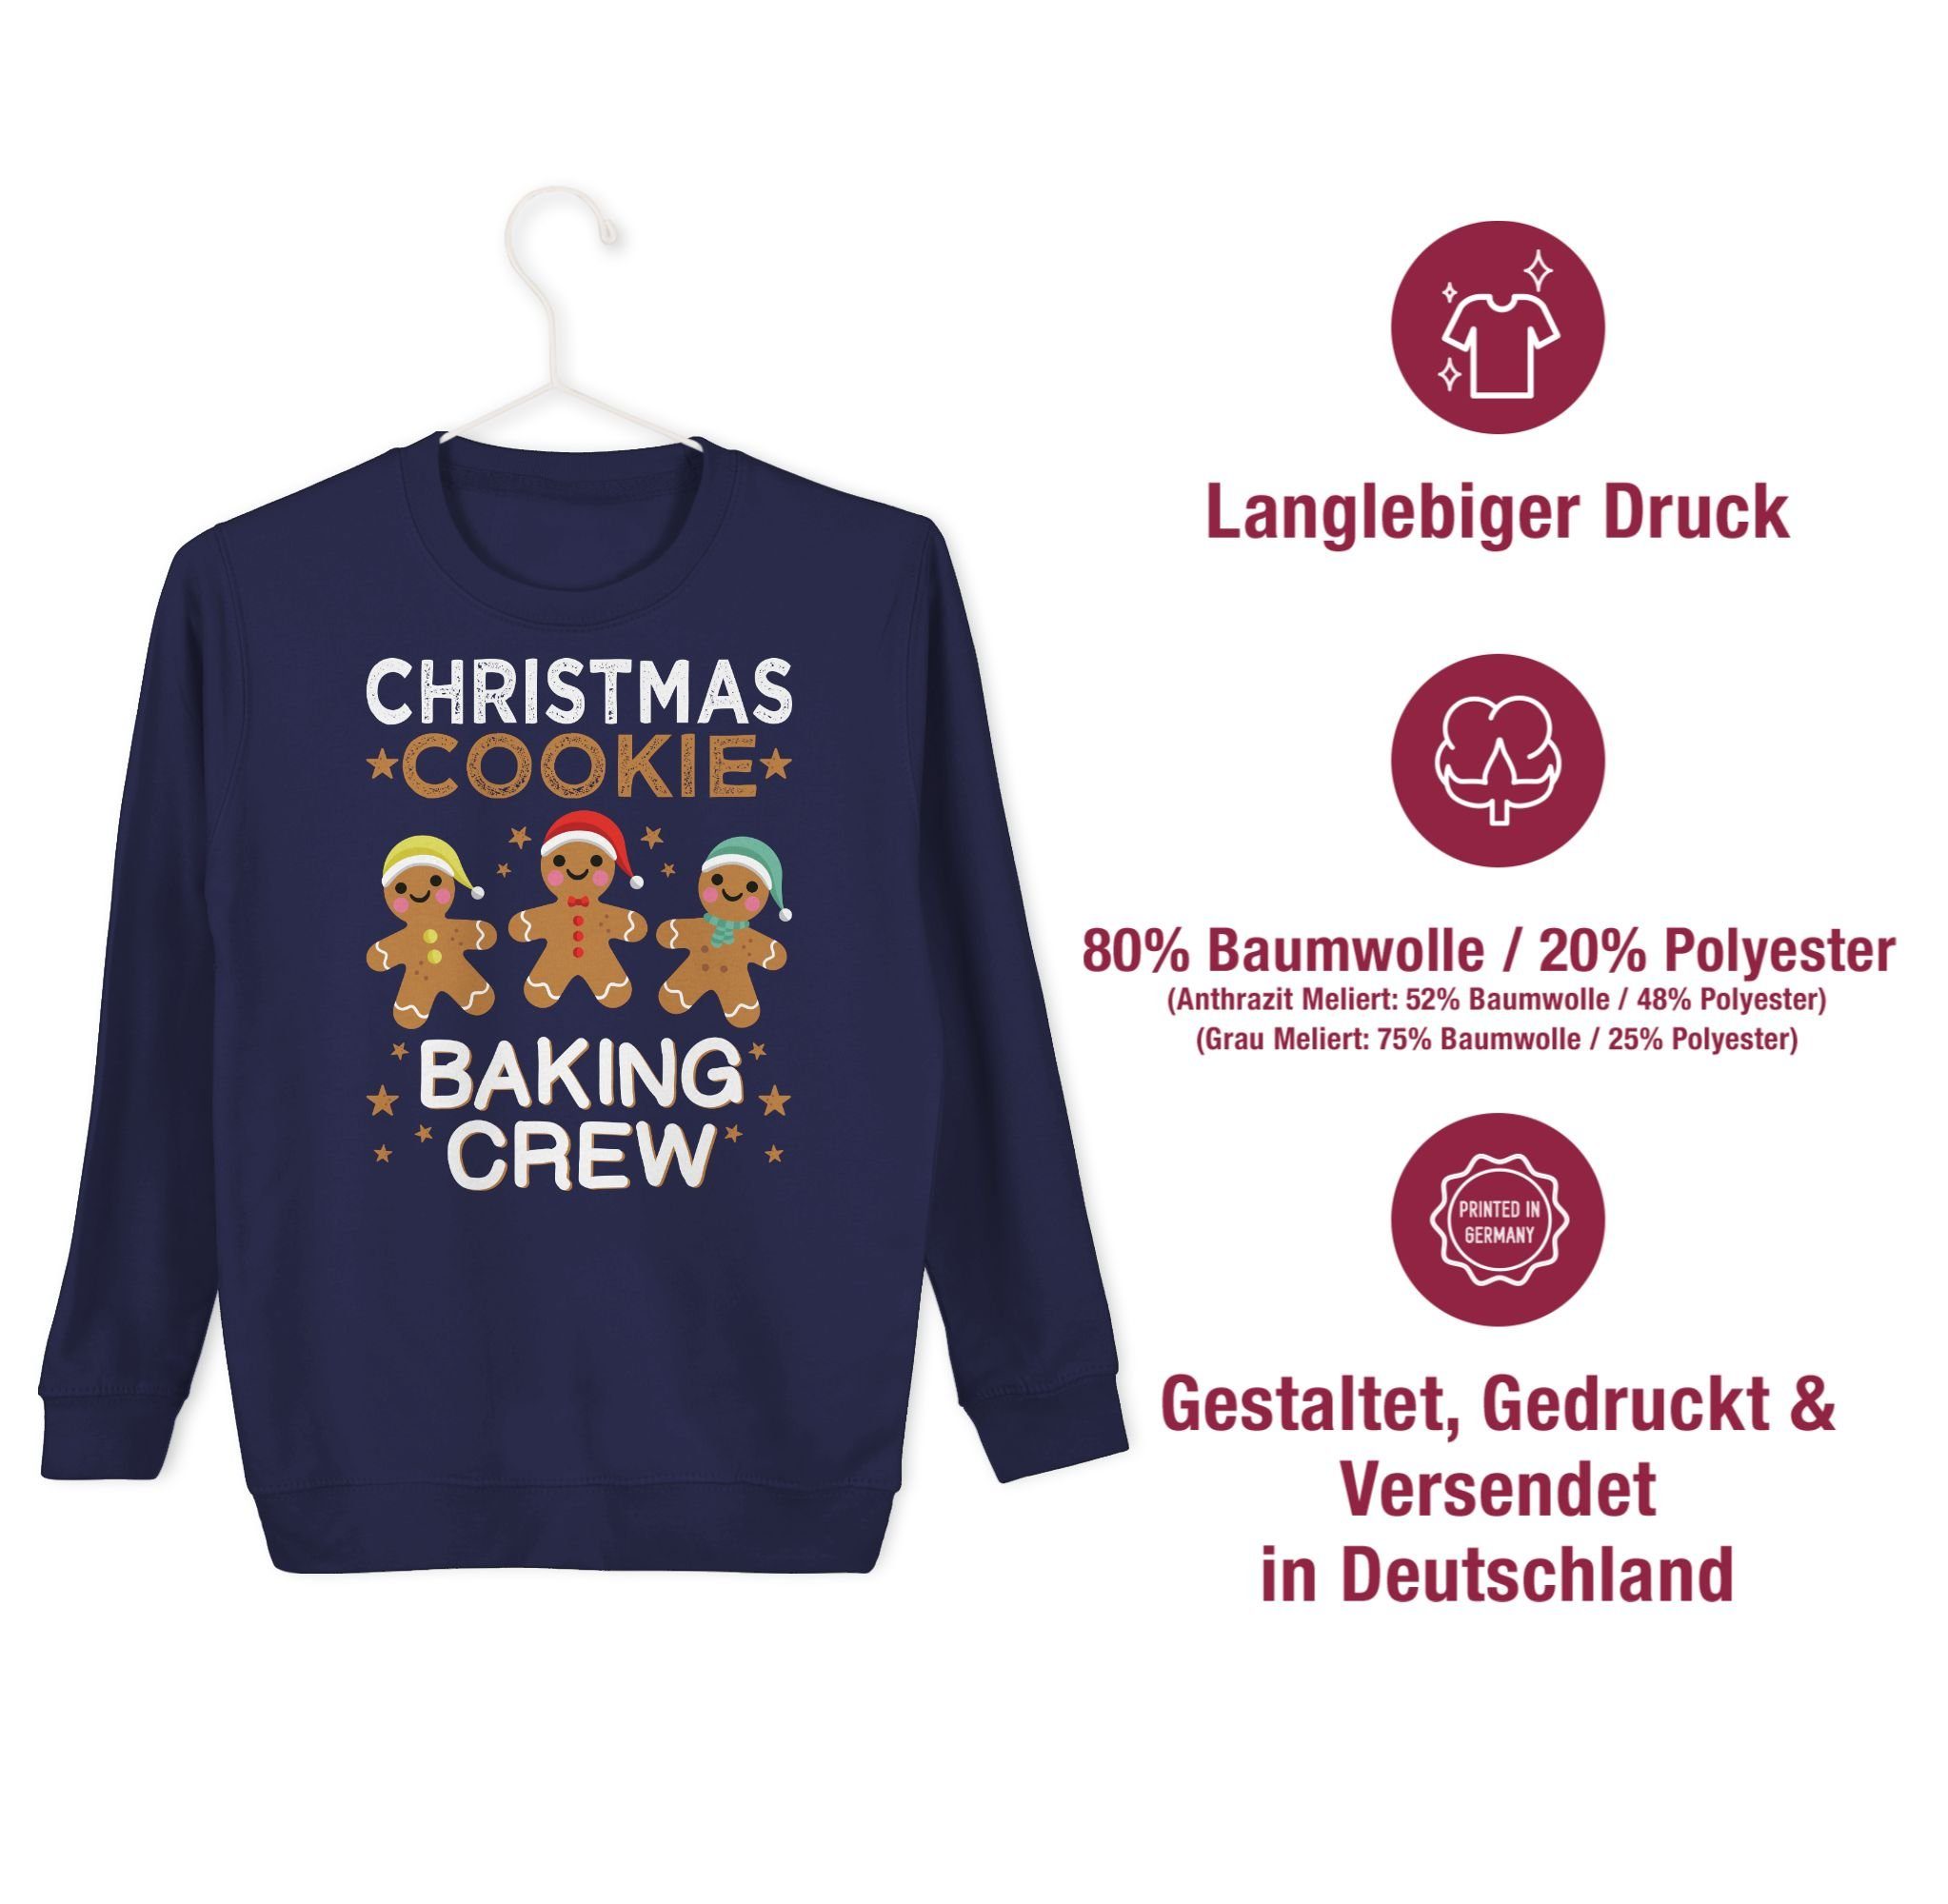 Kleidung Shirtracer Sweatshirt Blau Baking Cookie Lebkuchenmännchen Christmas Kinder 1 Navy Crew Weihnachten